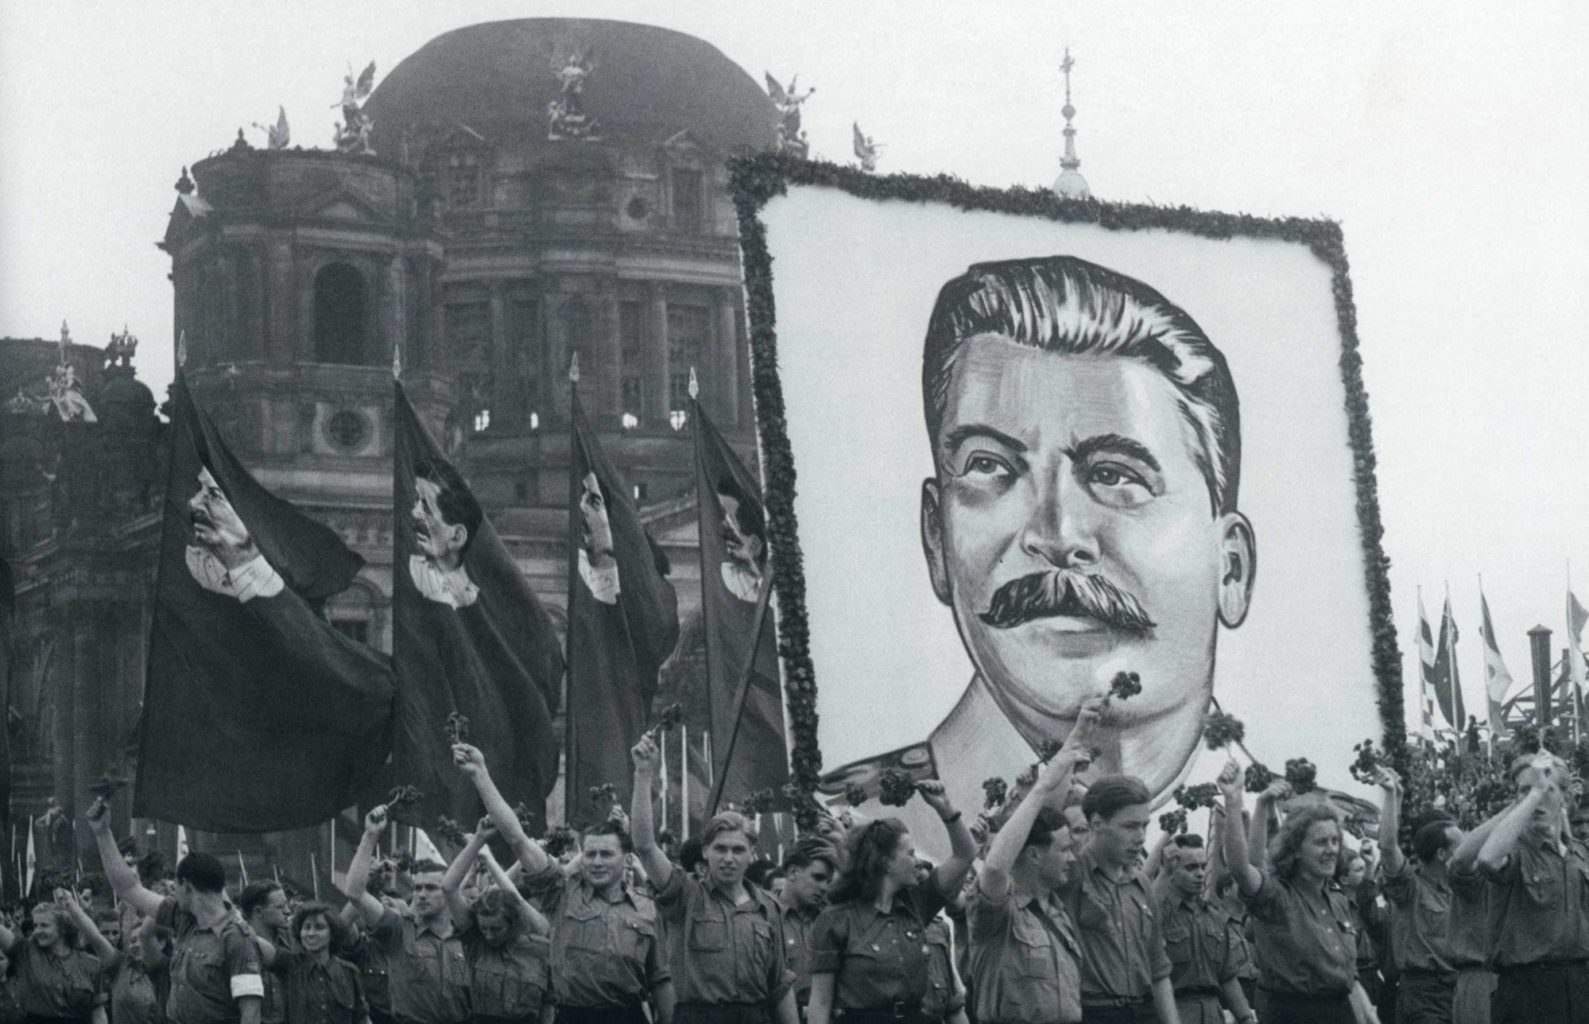 Hommage à Staline dans une région communiste en 1951